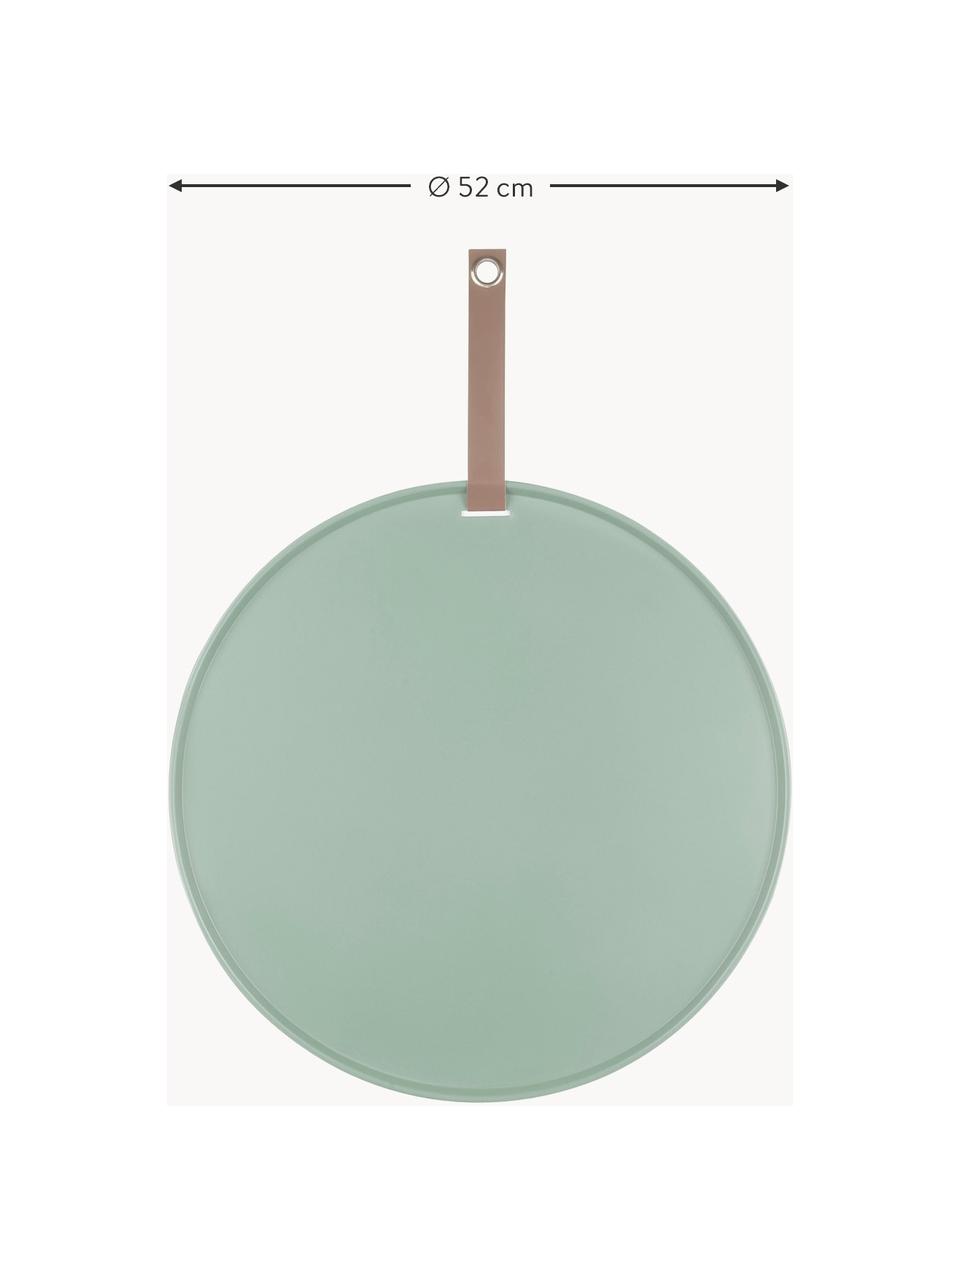 Tablero de notas magnético Perky, Poliuretano, Verde salvia, Ø 52 cm